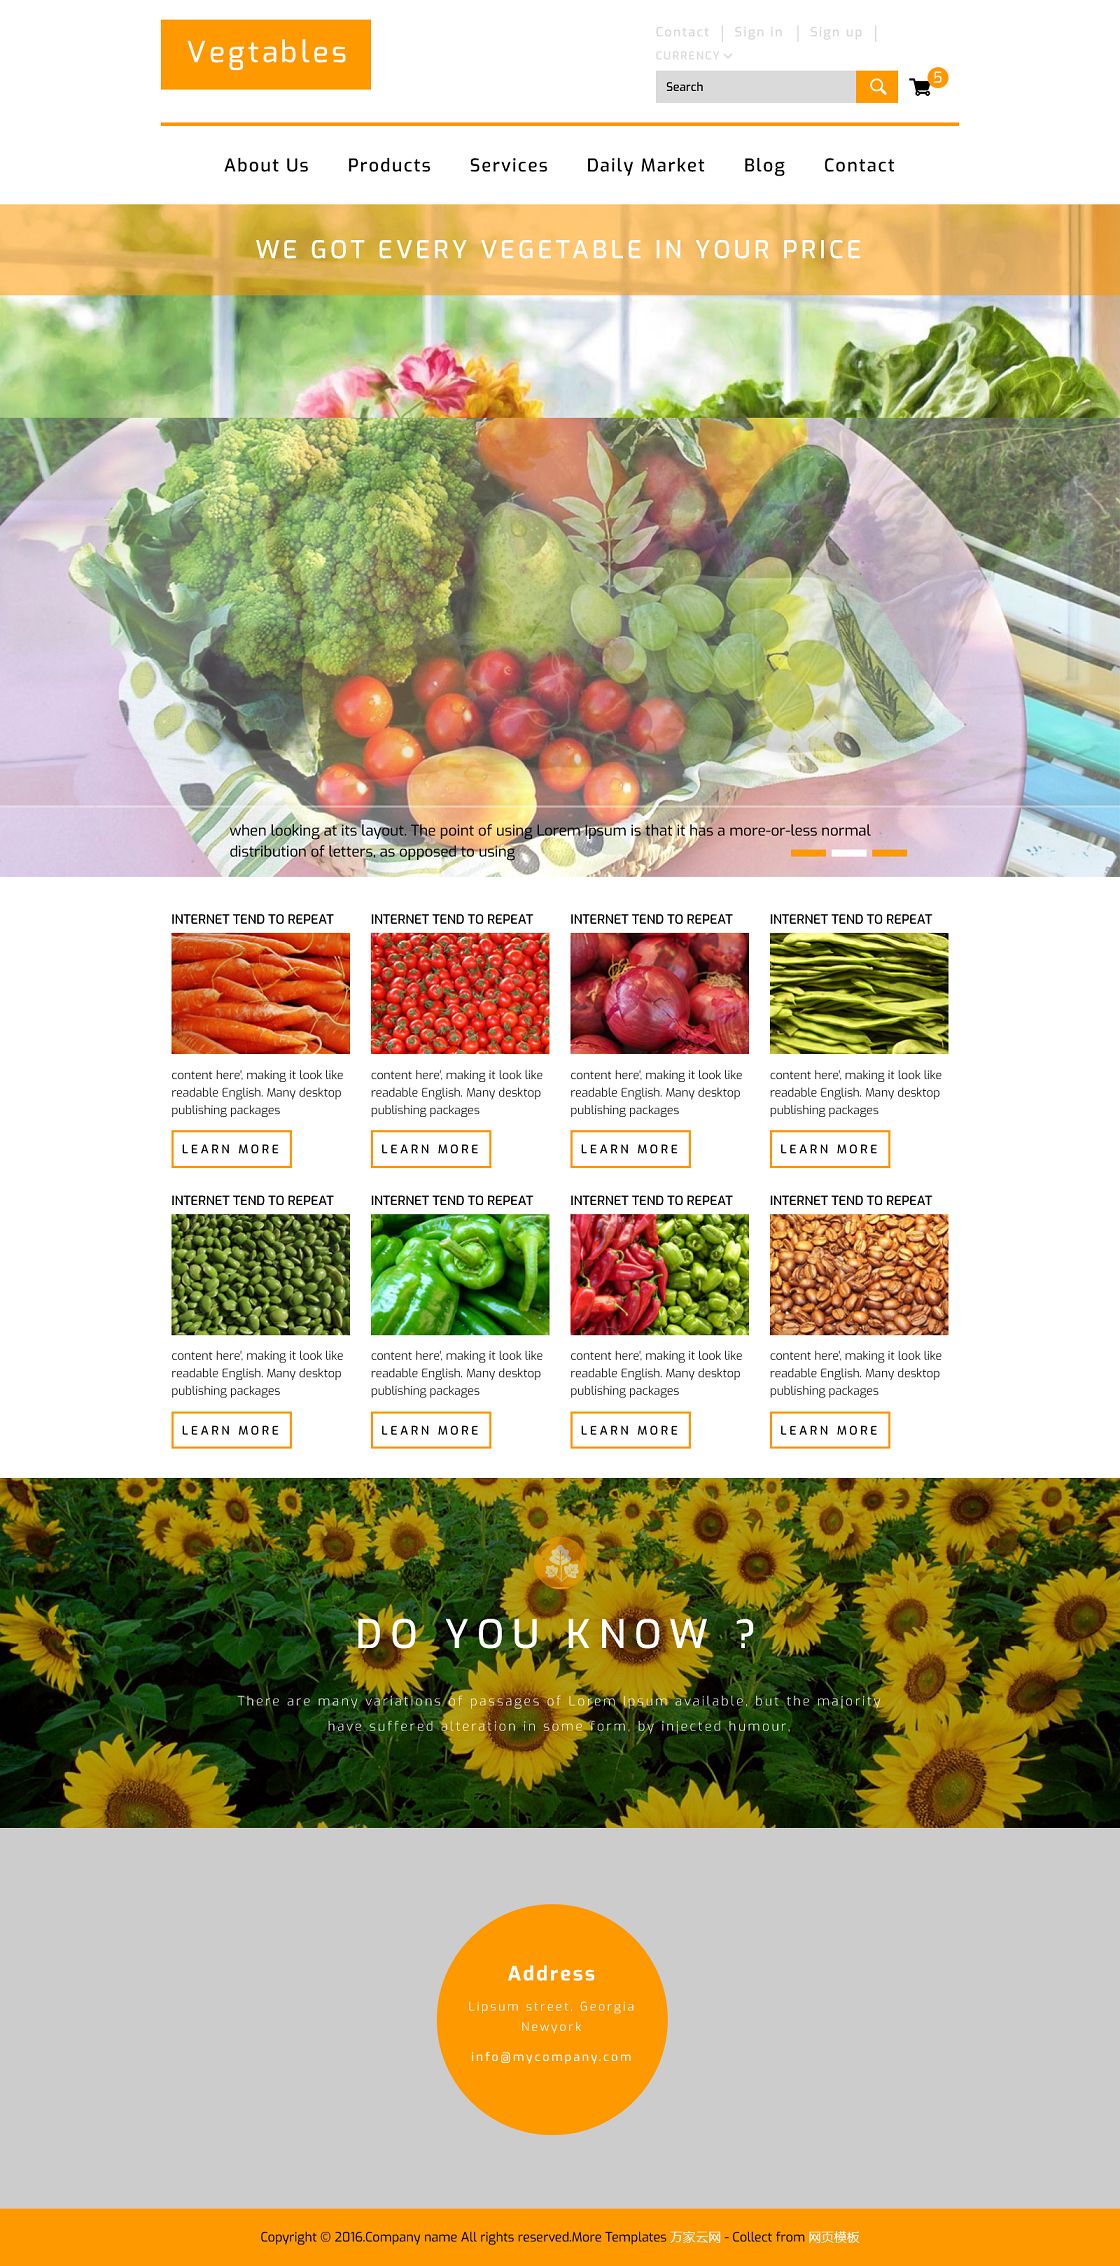 蔬菜批发市场html5网页模板